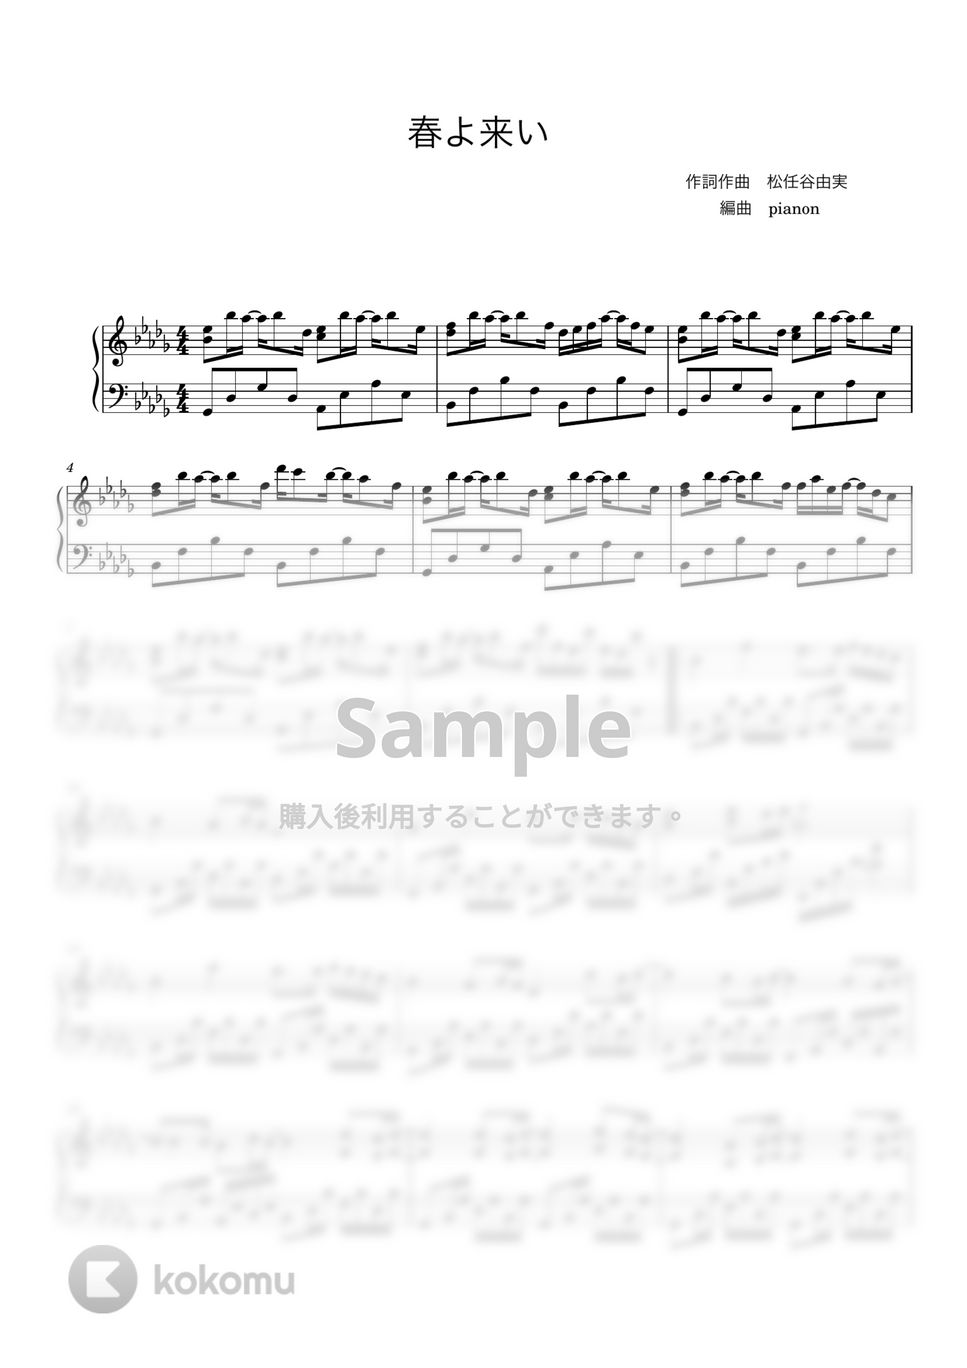 松任谷由実 - 春よ来い (ピアノ上級ソロ) by pianon